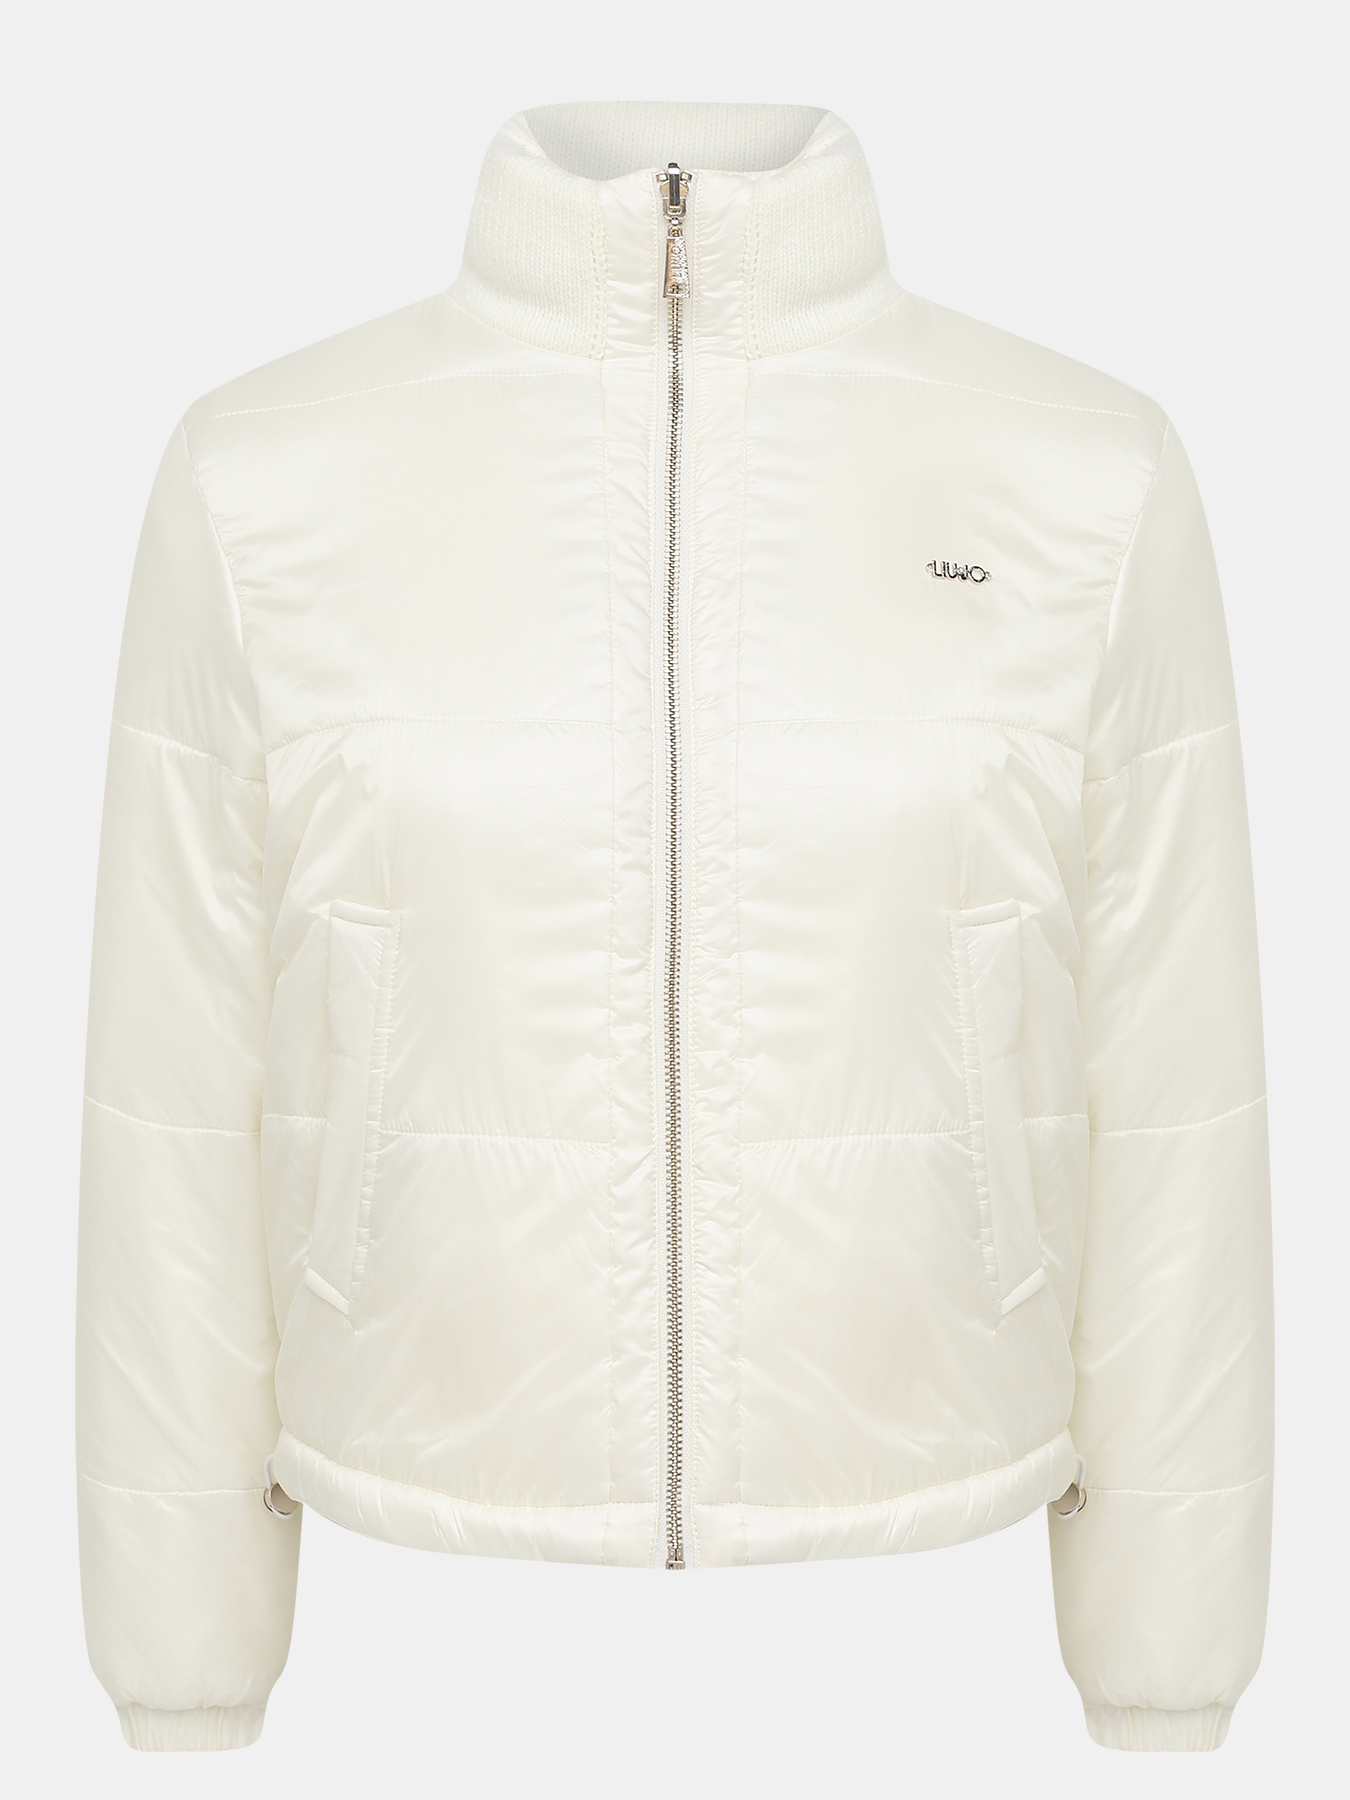 Двусторонняя куртка Liu Jo Sport 414790-041, цвет молочный, размер 40-42